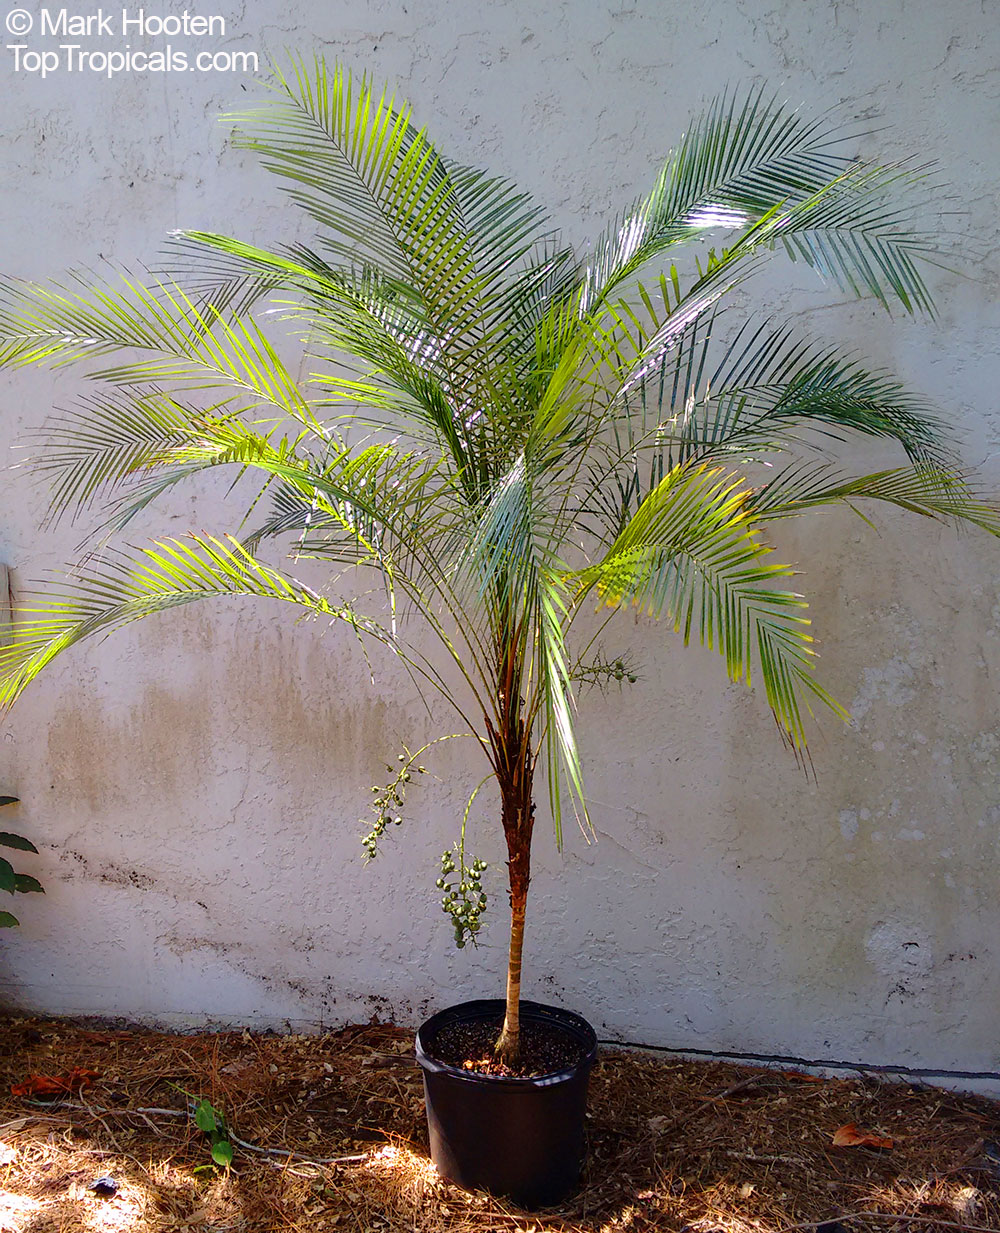 Lytocaryum weddellianum, Cocos weddelliana, Syagrus weddelliana, Miniature Coconut Palm, Weddell's Palm